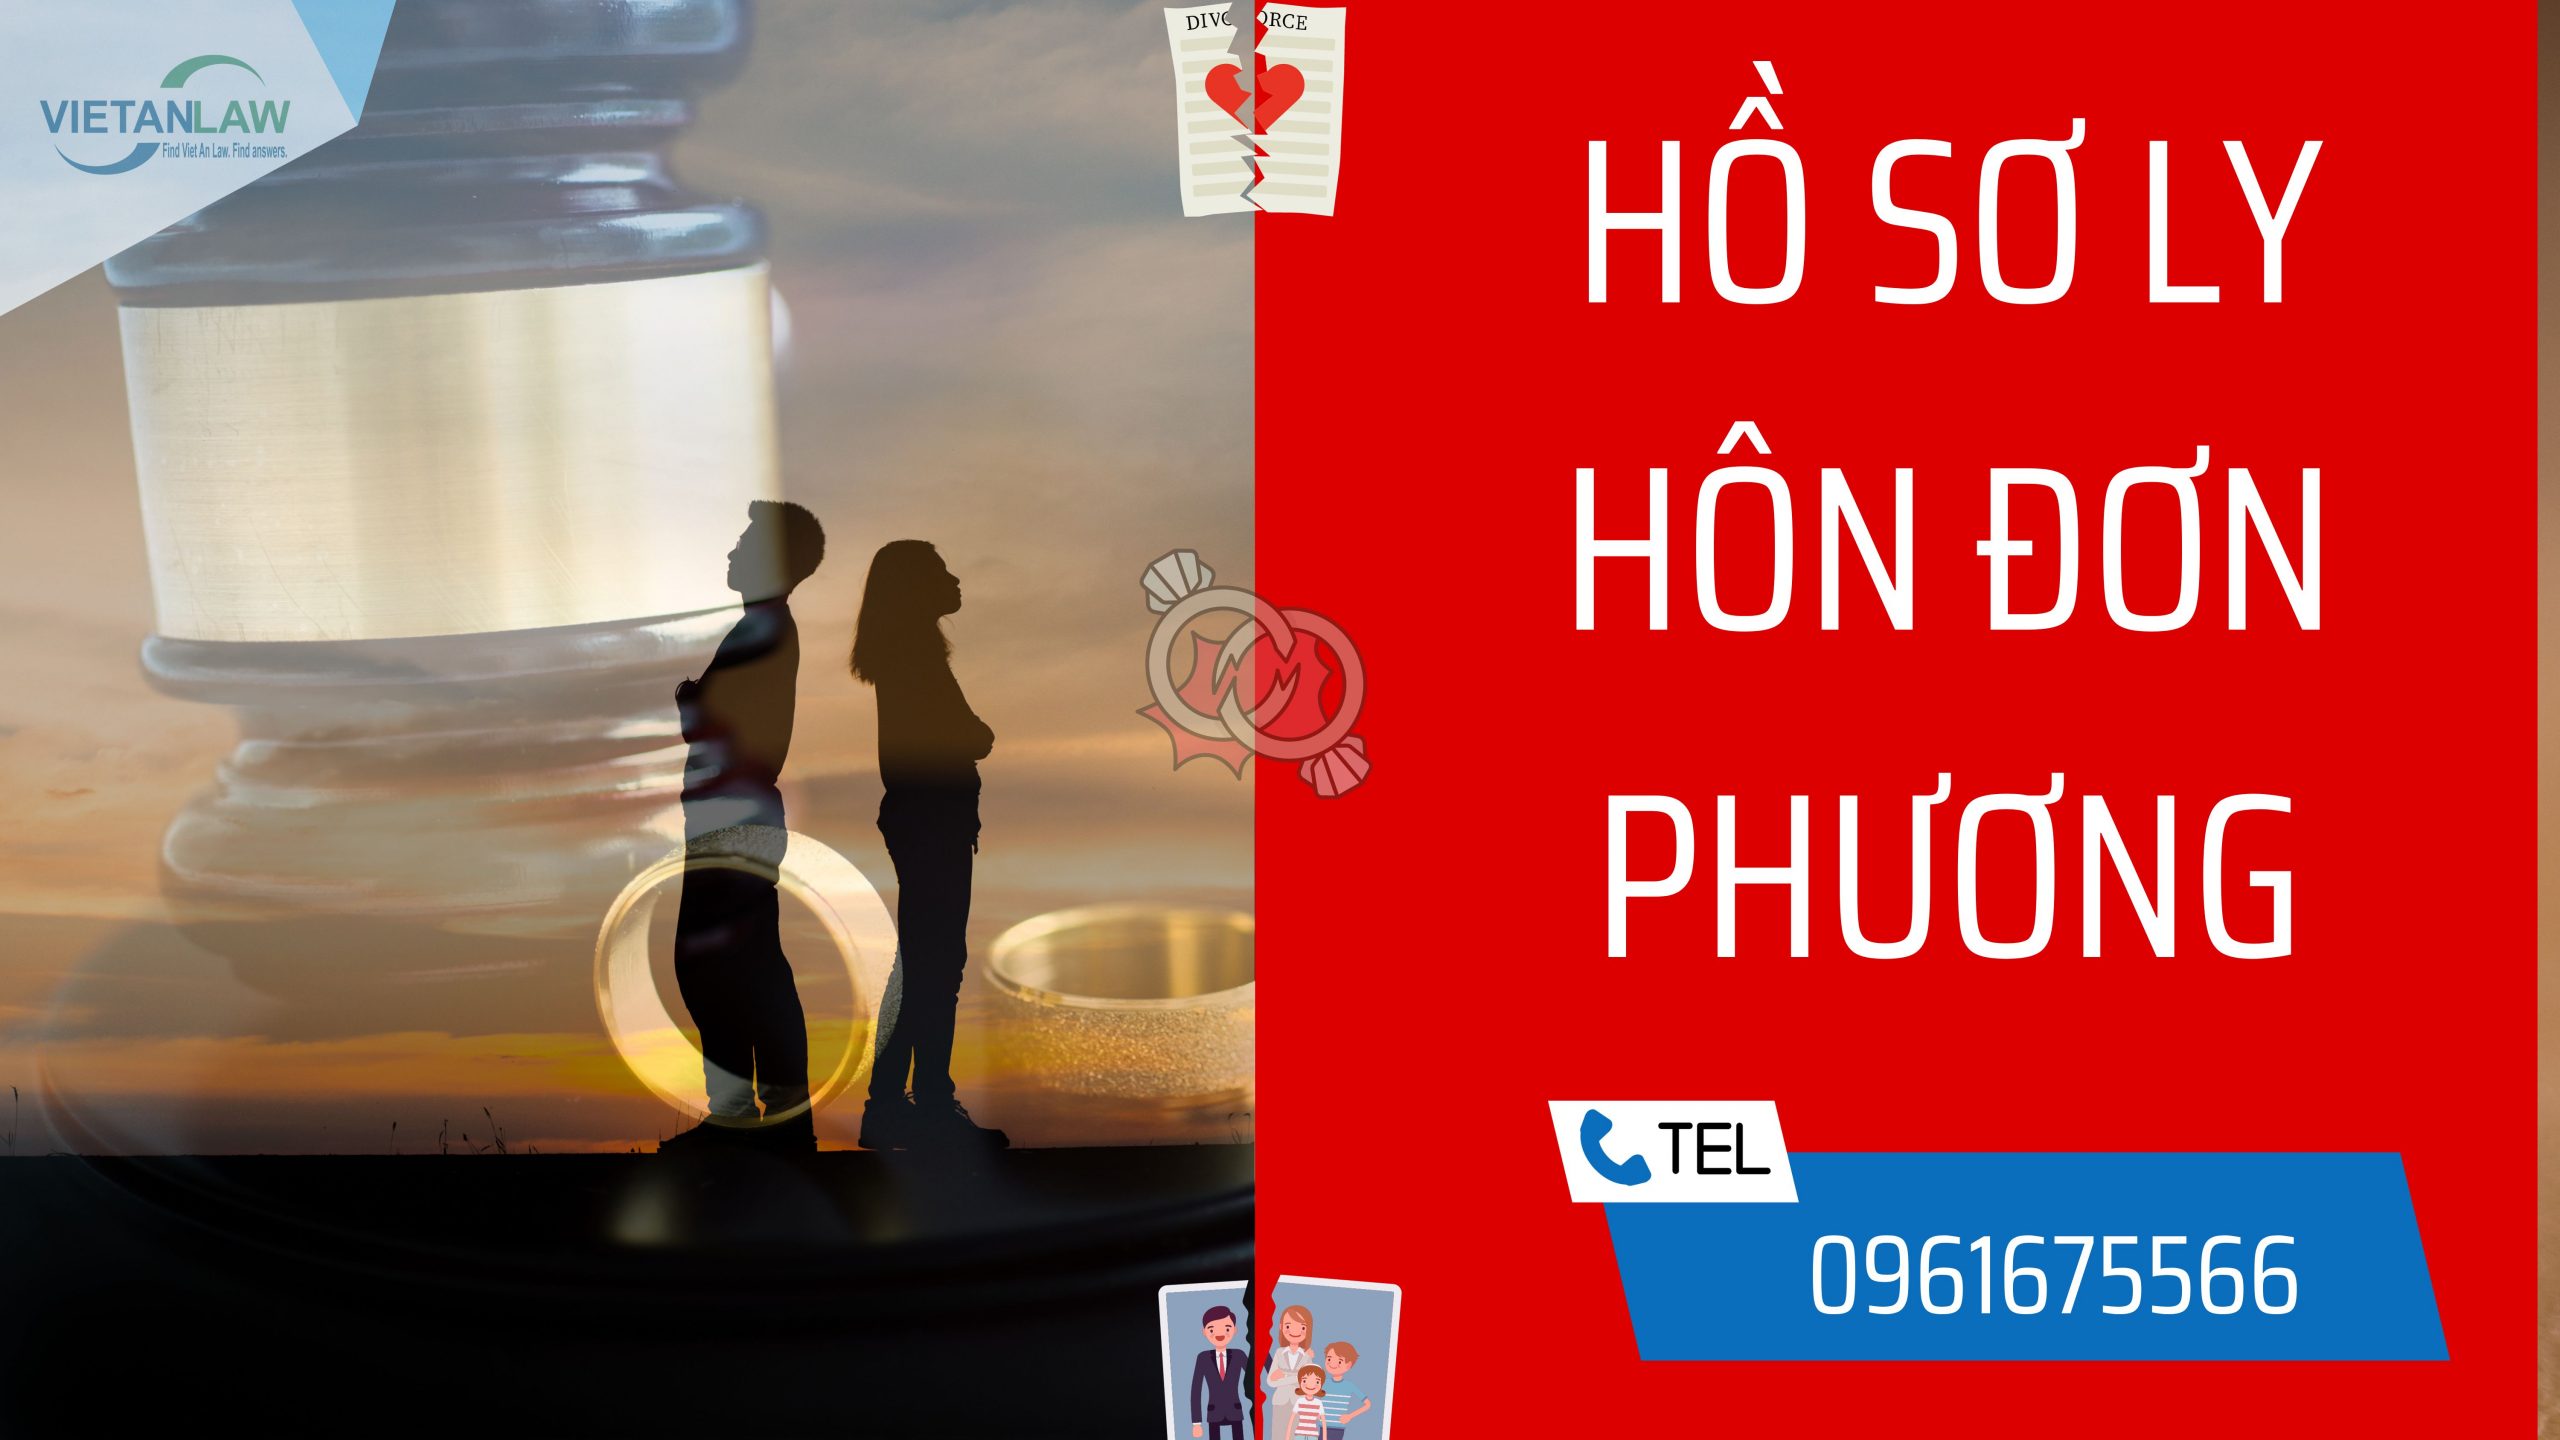 Ho so ly hon don phuong (1)